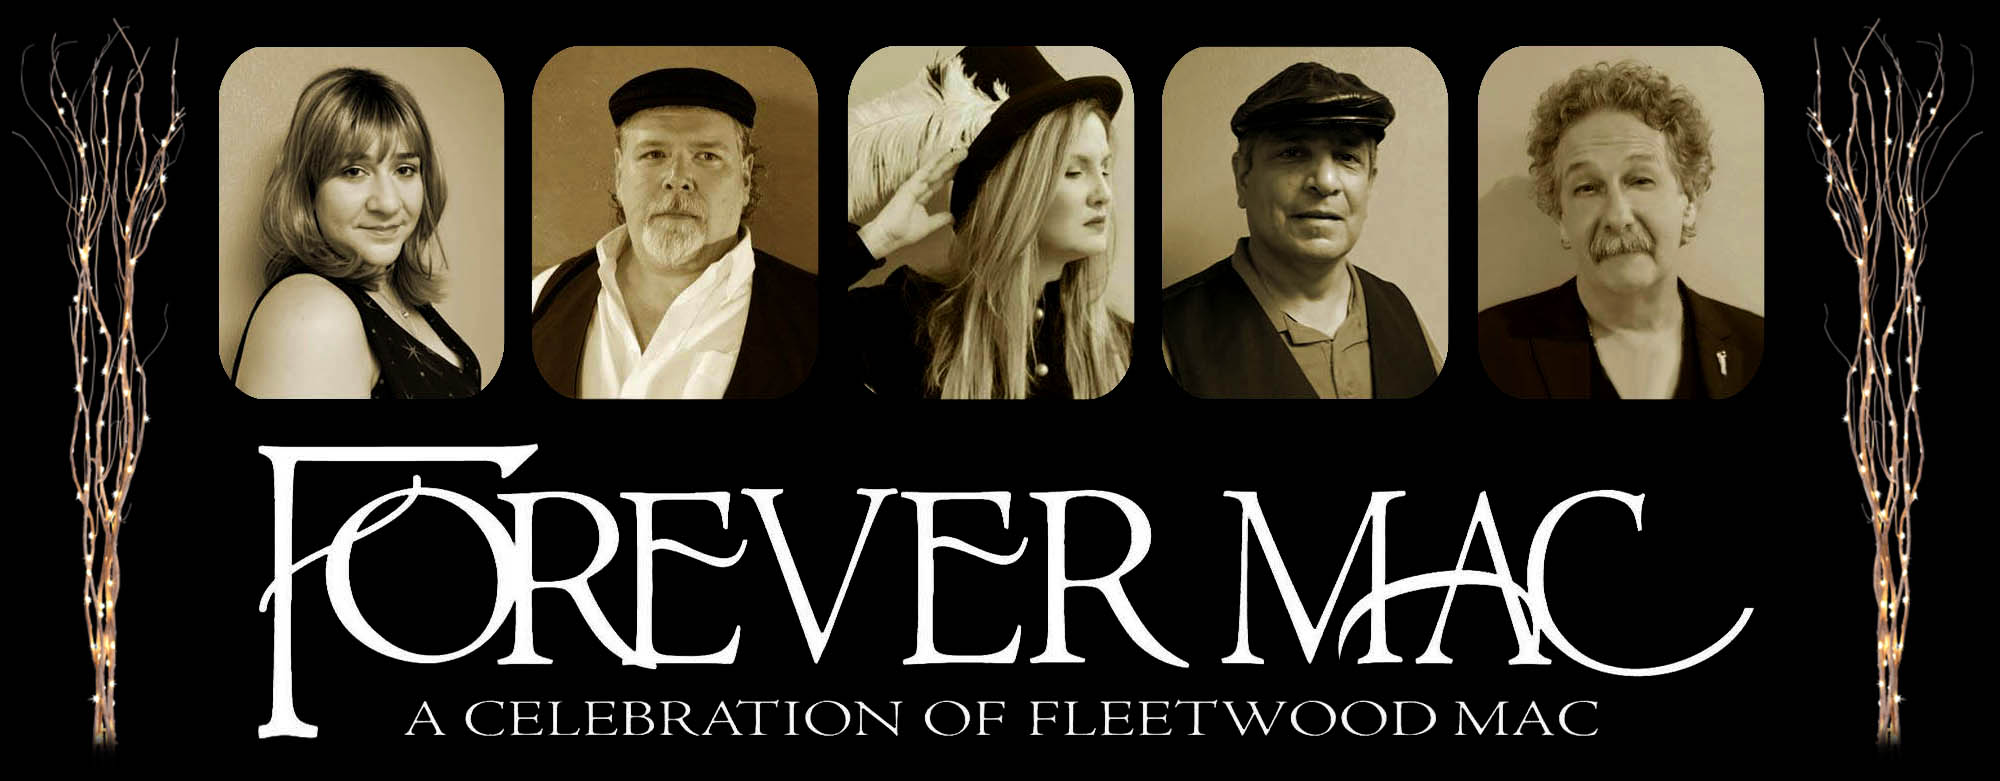 Fleetwood Mac Tribute: Forever Mac - hero